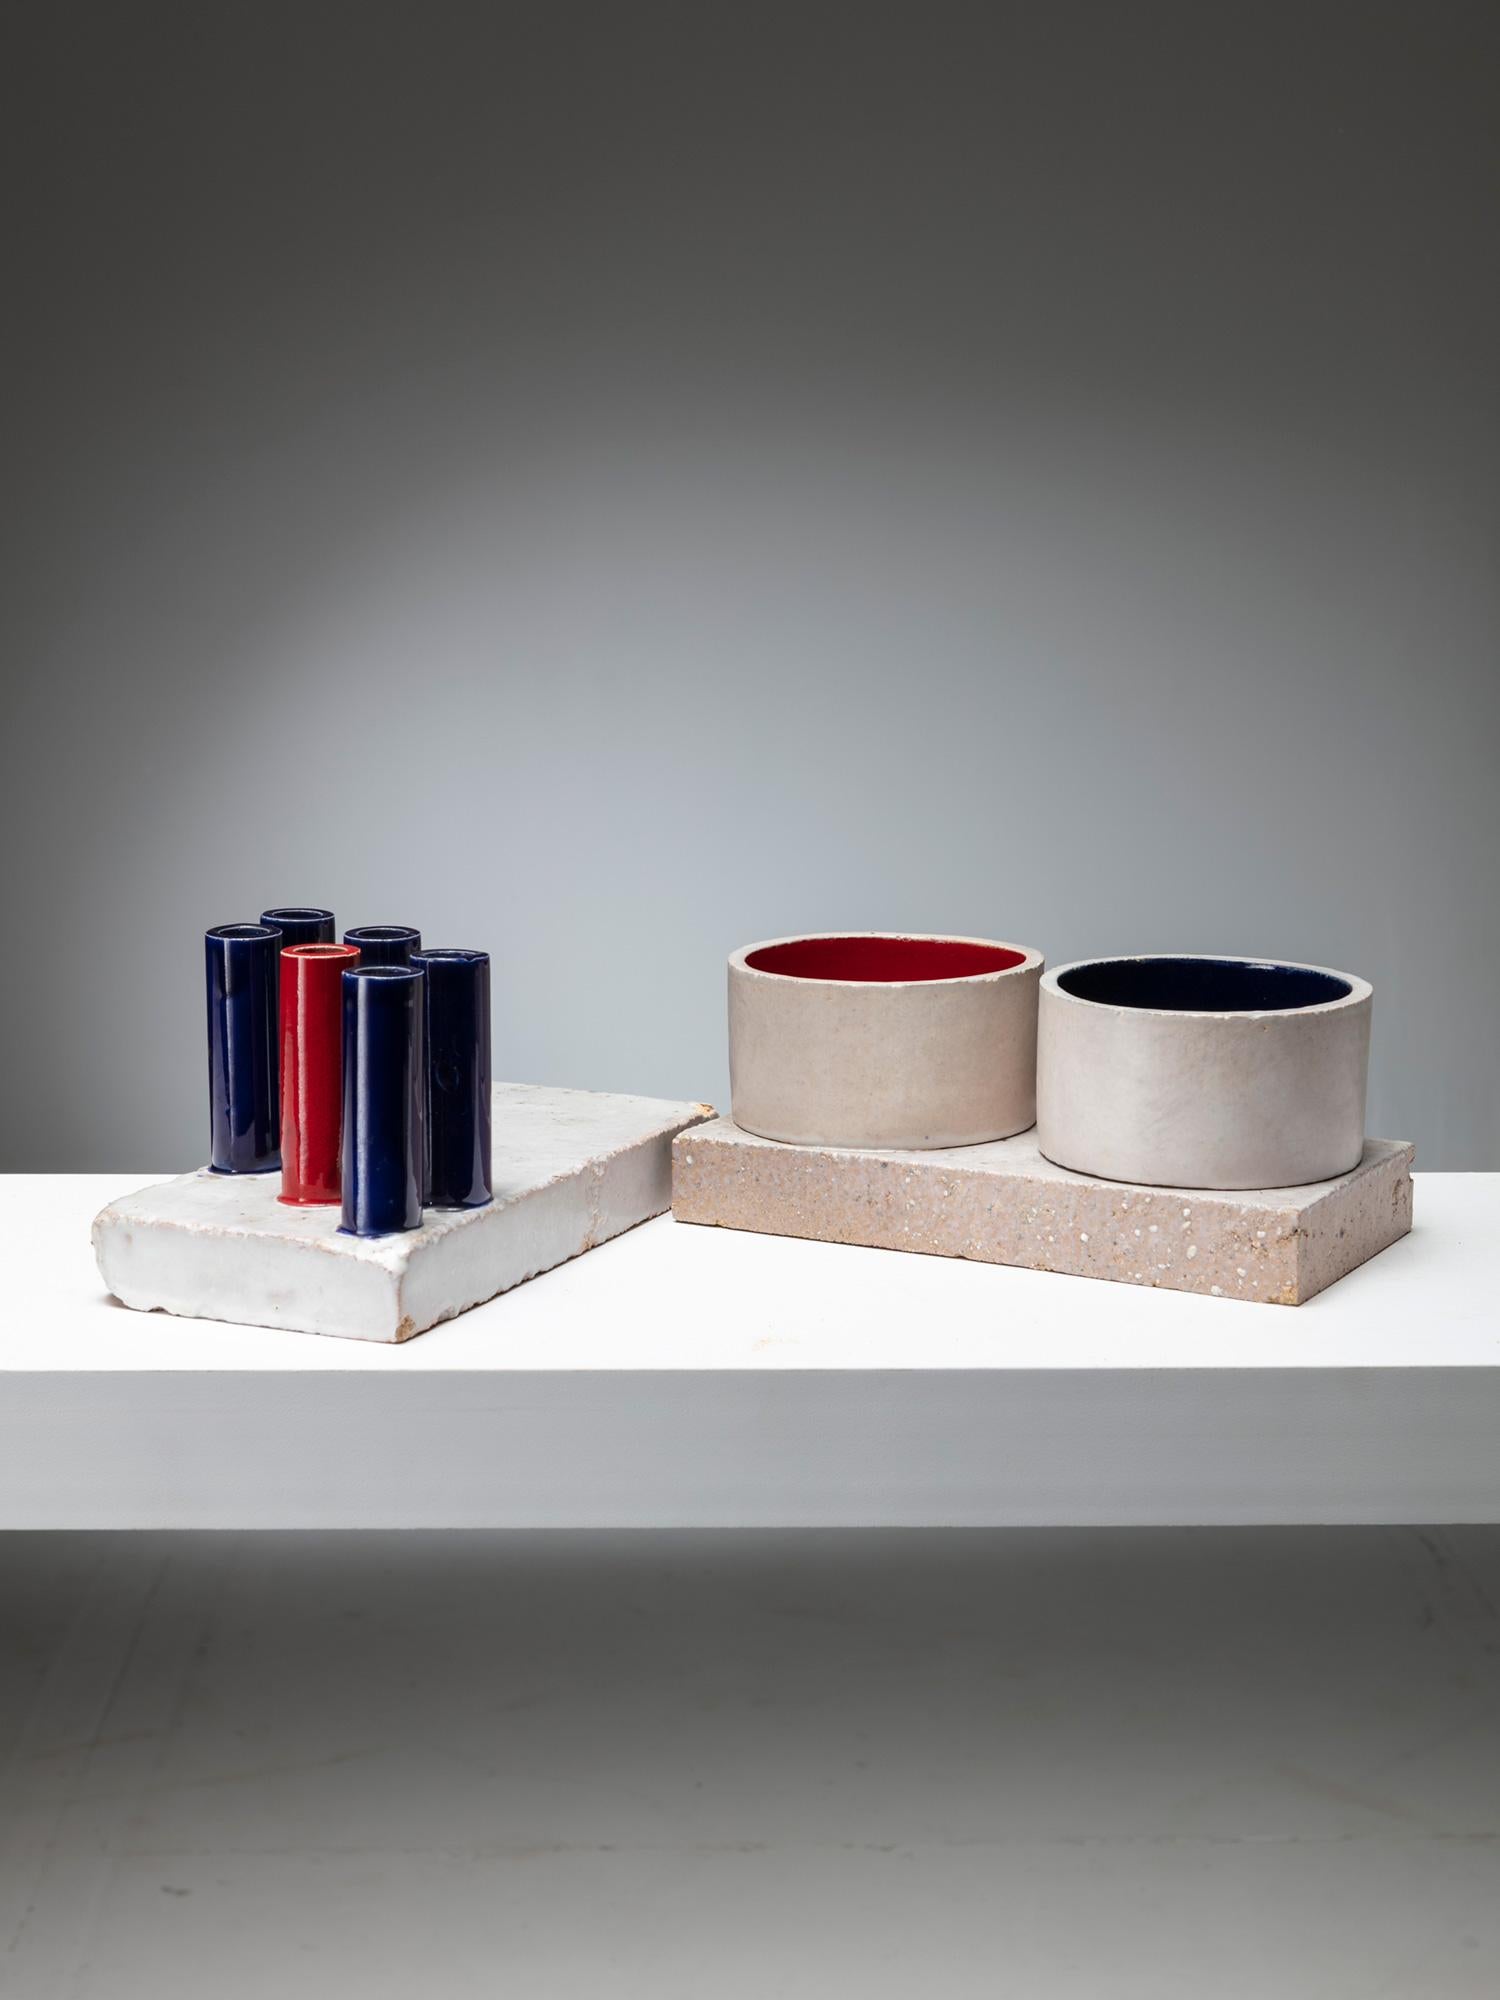 Drei verschiedene Tubi/Tubi-Stücke von Ambrogio Pozzi für Ceramica Franco Pozzi.
Glasierte Keramikblöcke, die einzeln oder zusammen verwendet werden können.